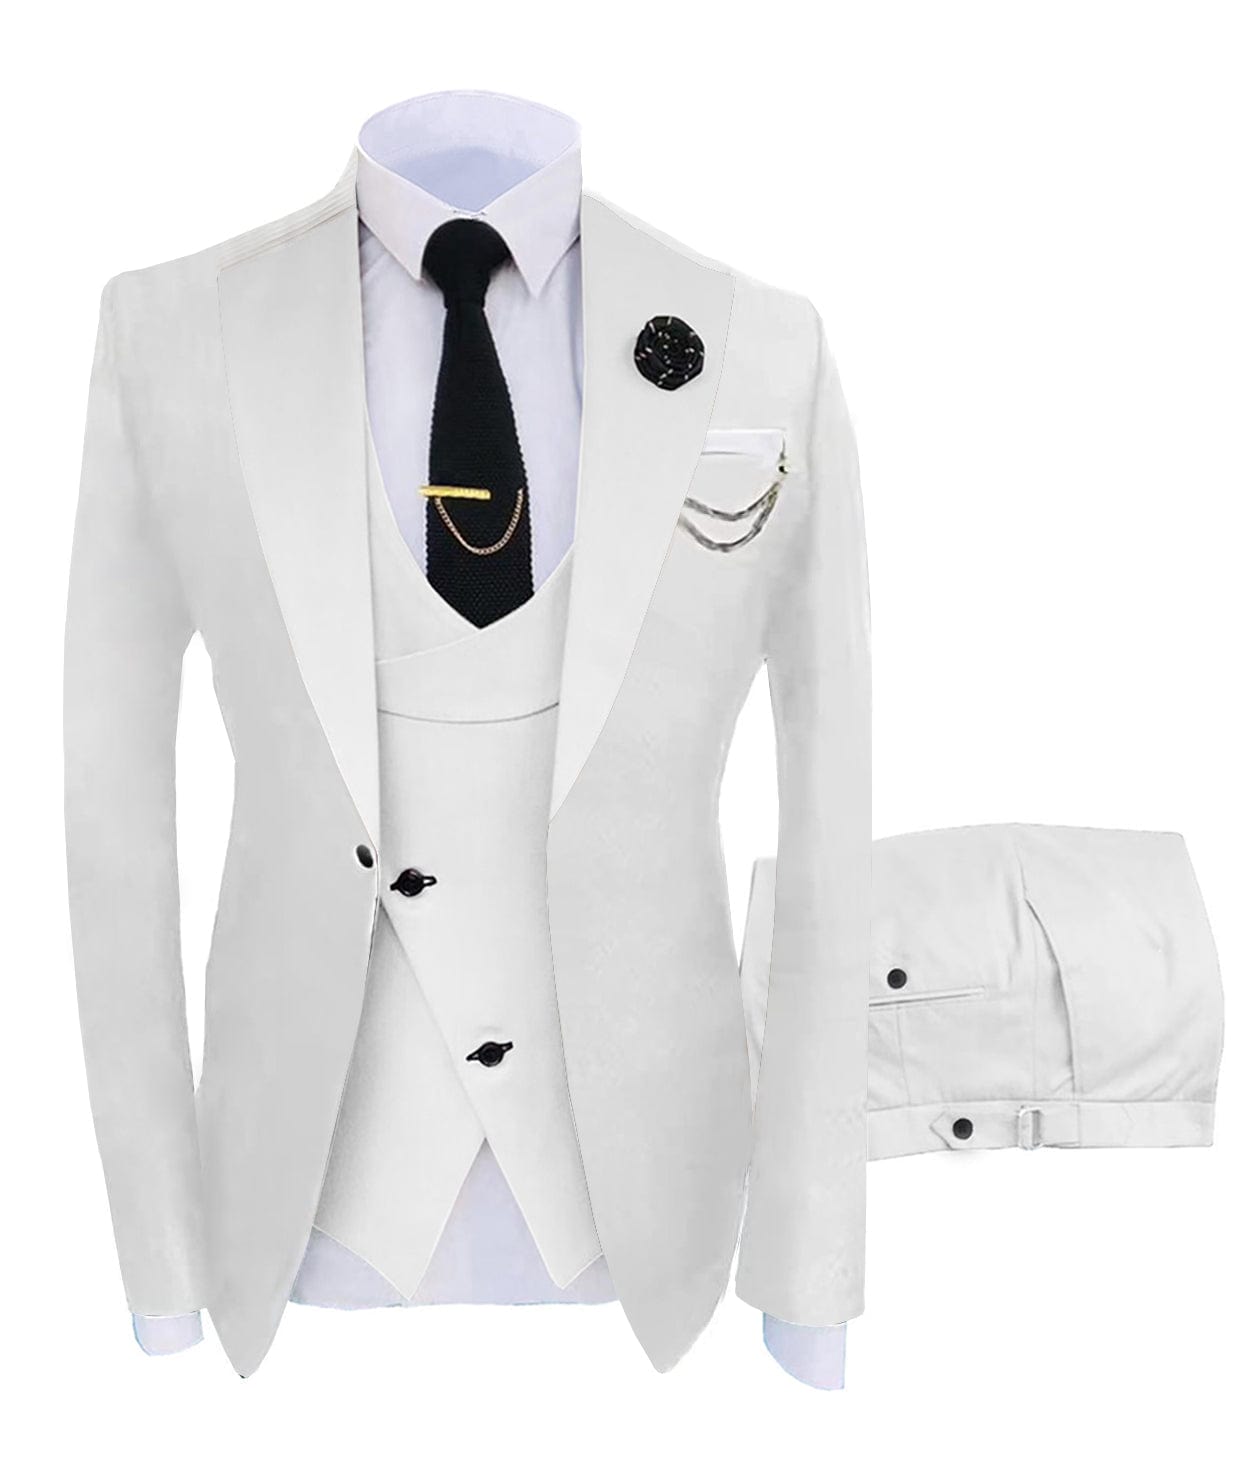 ceehuteey Men's 3 Piece Suits Slim Fit Notch Lapel Western Tuxedos (White Blazer+Vest+ Pant)